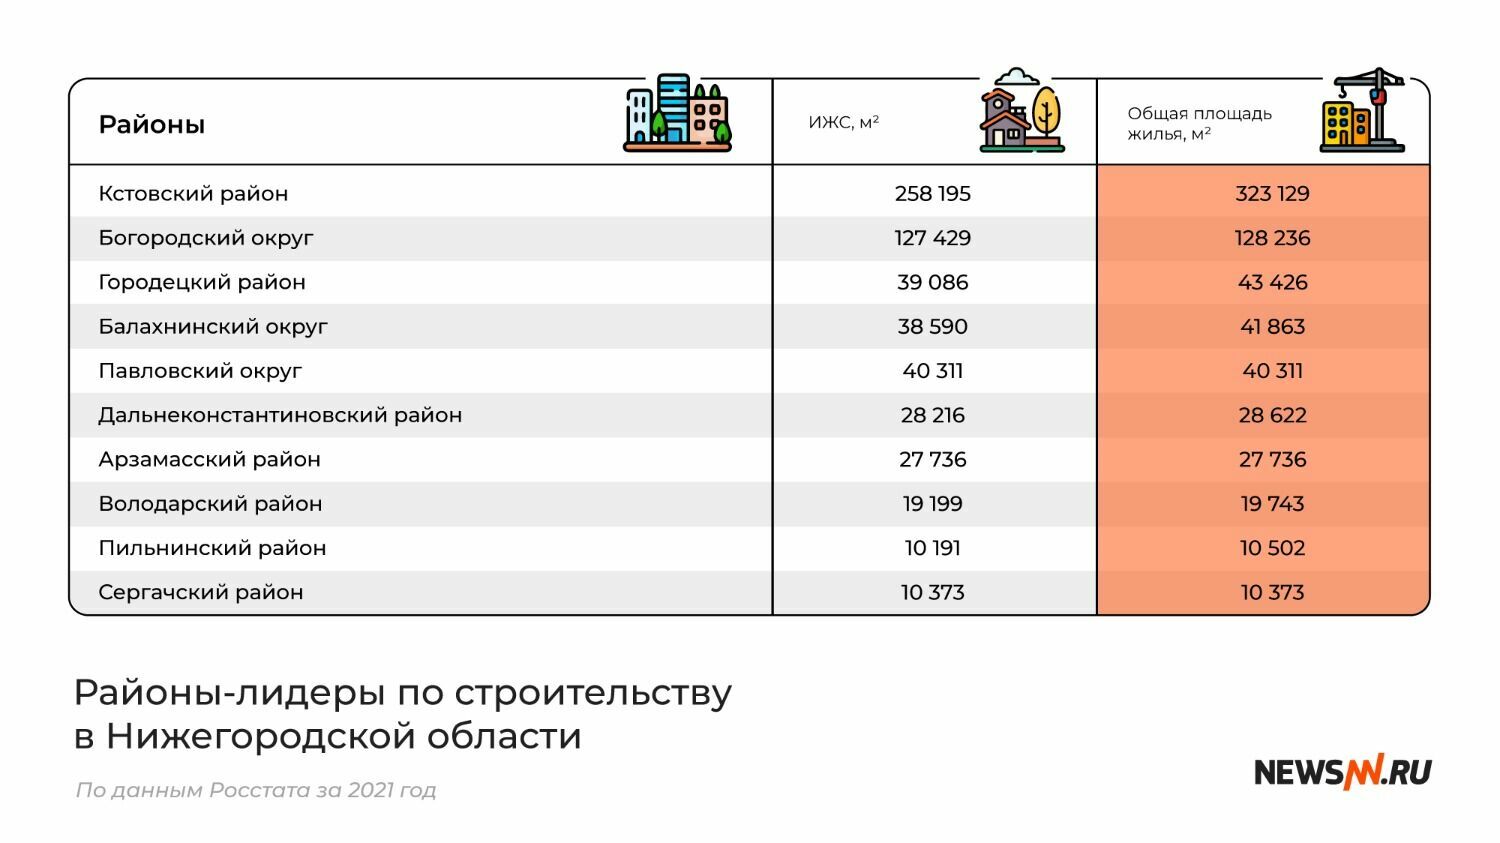 Районы-лидеры по строительству в Нижегородской области